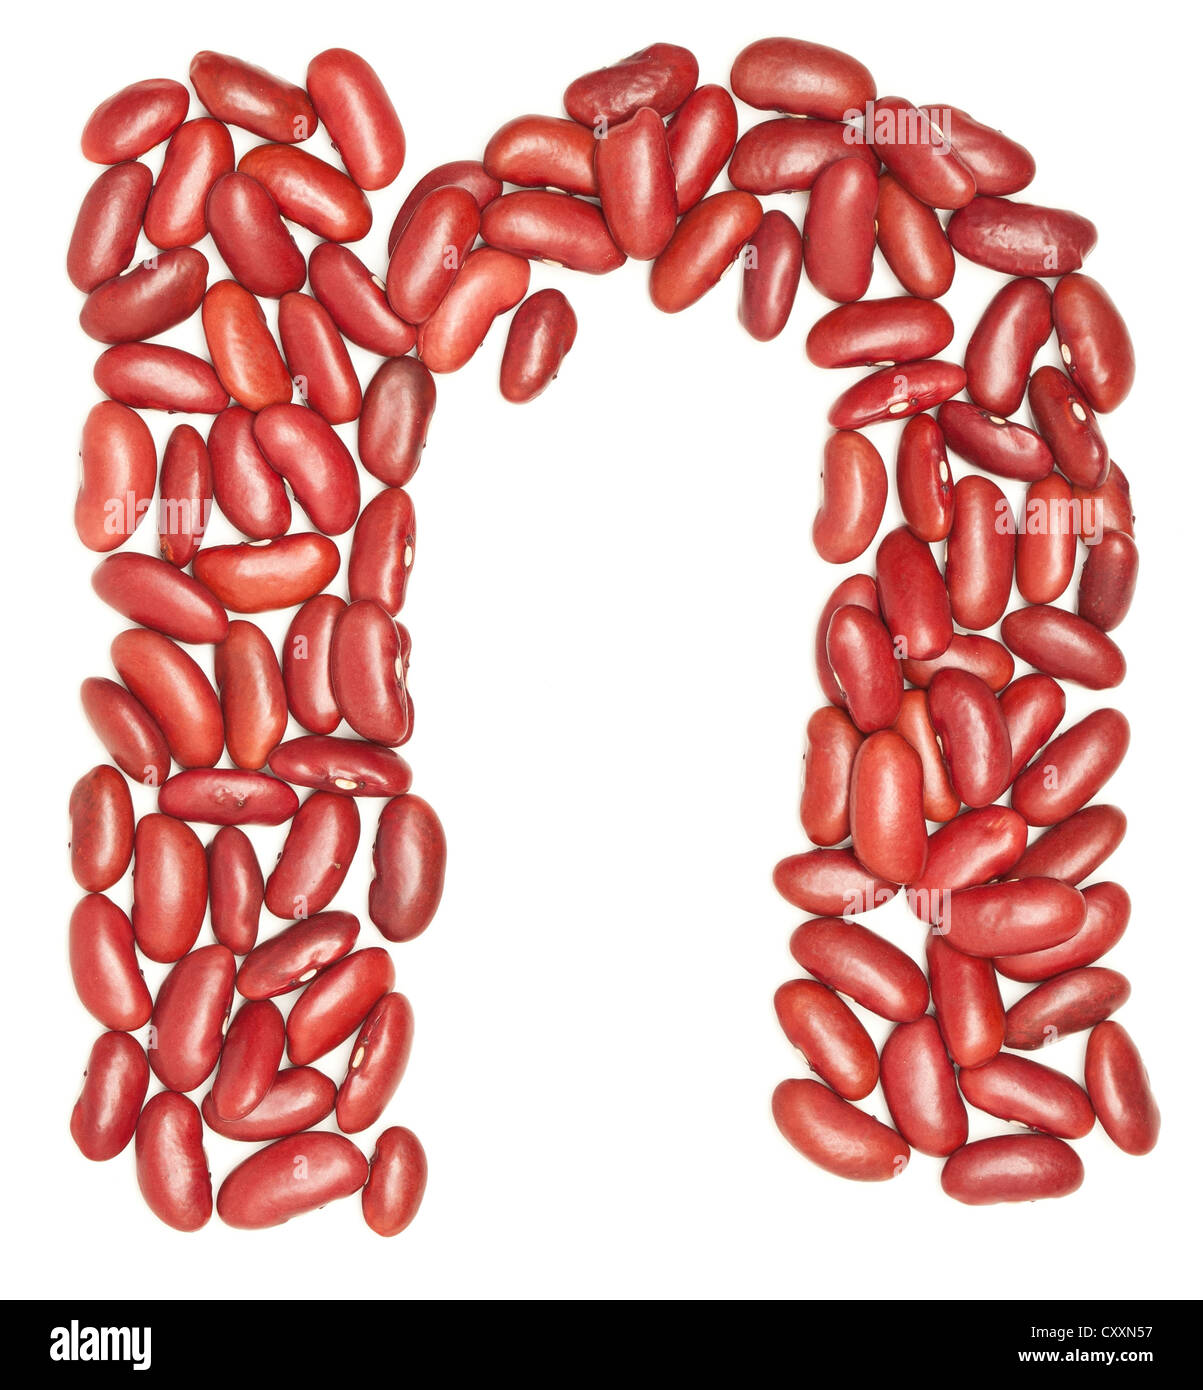 N, alfabeto de frijoles rojos, en blanco. Foto de stock